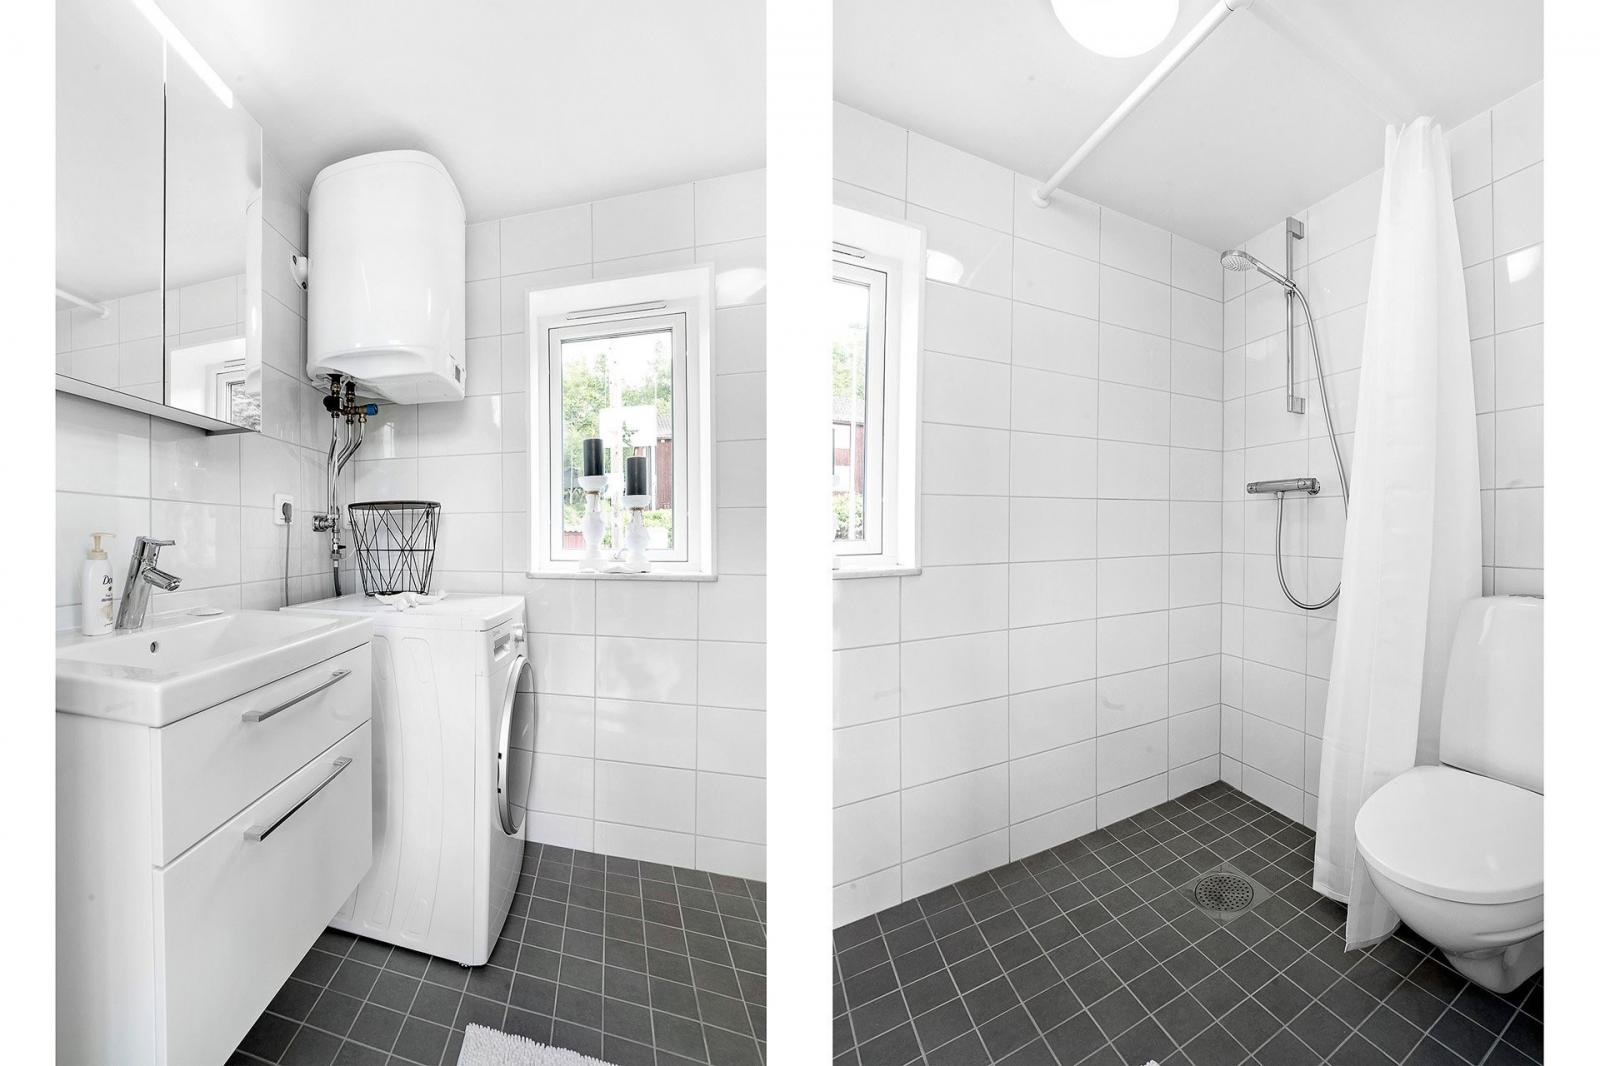 Hình ảnh phòng tắm với tường sơn trắng, sàn lát gạch đen, cửa sổ kính trong suốt